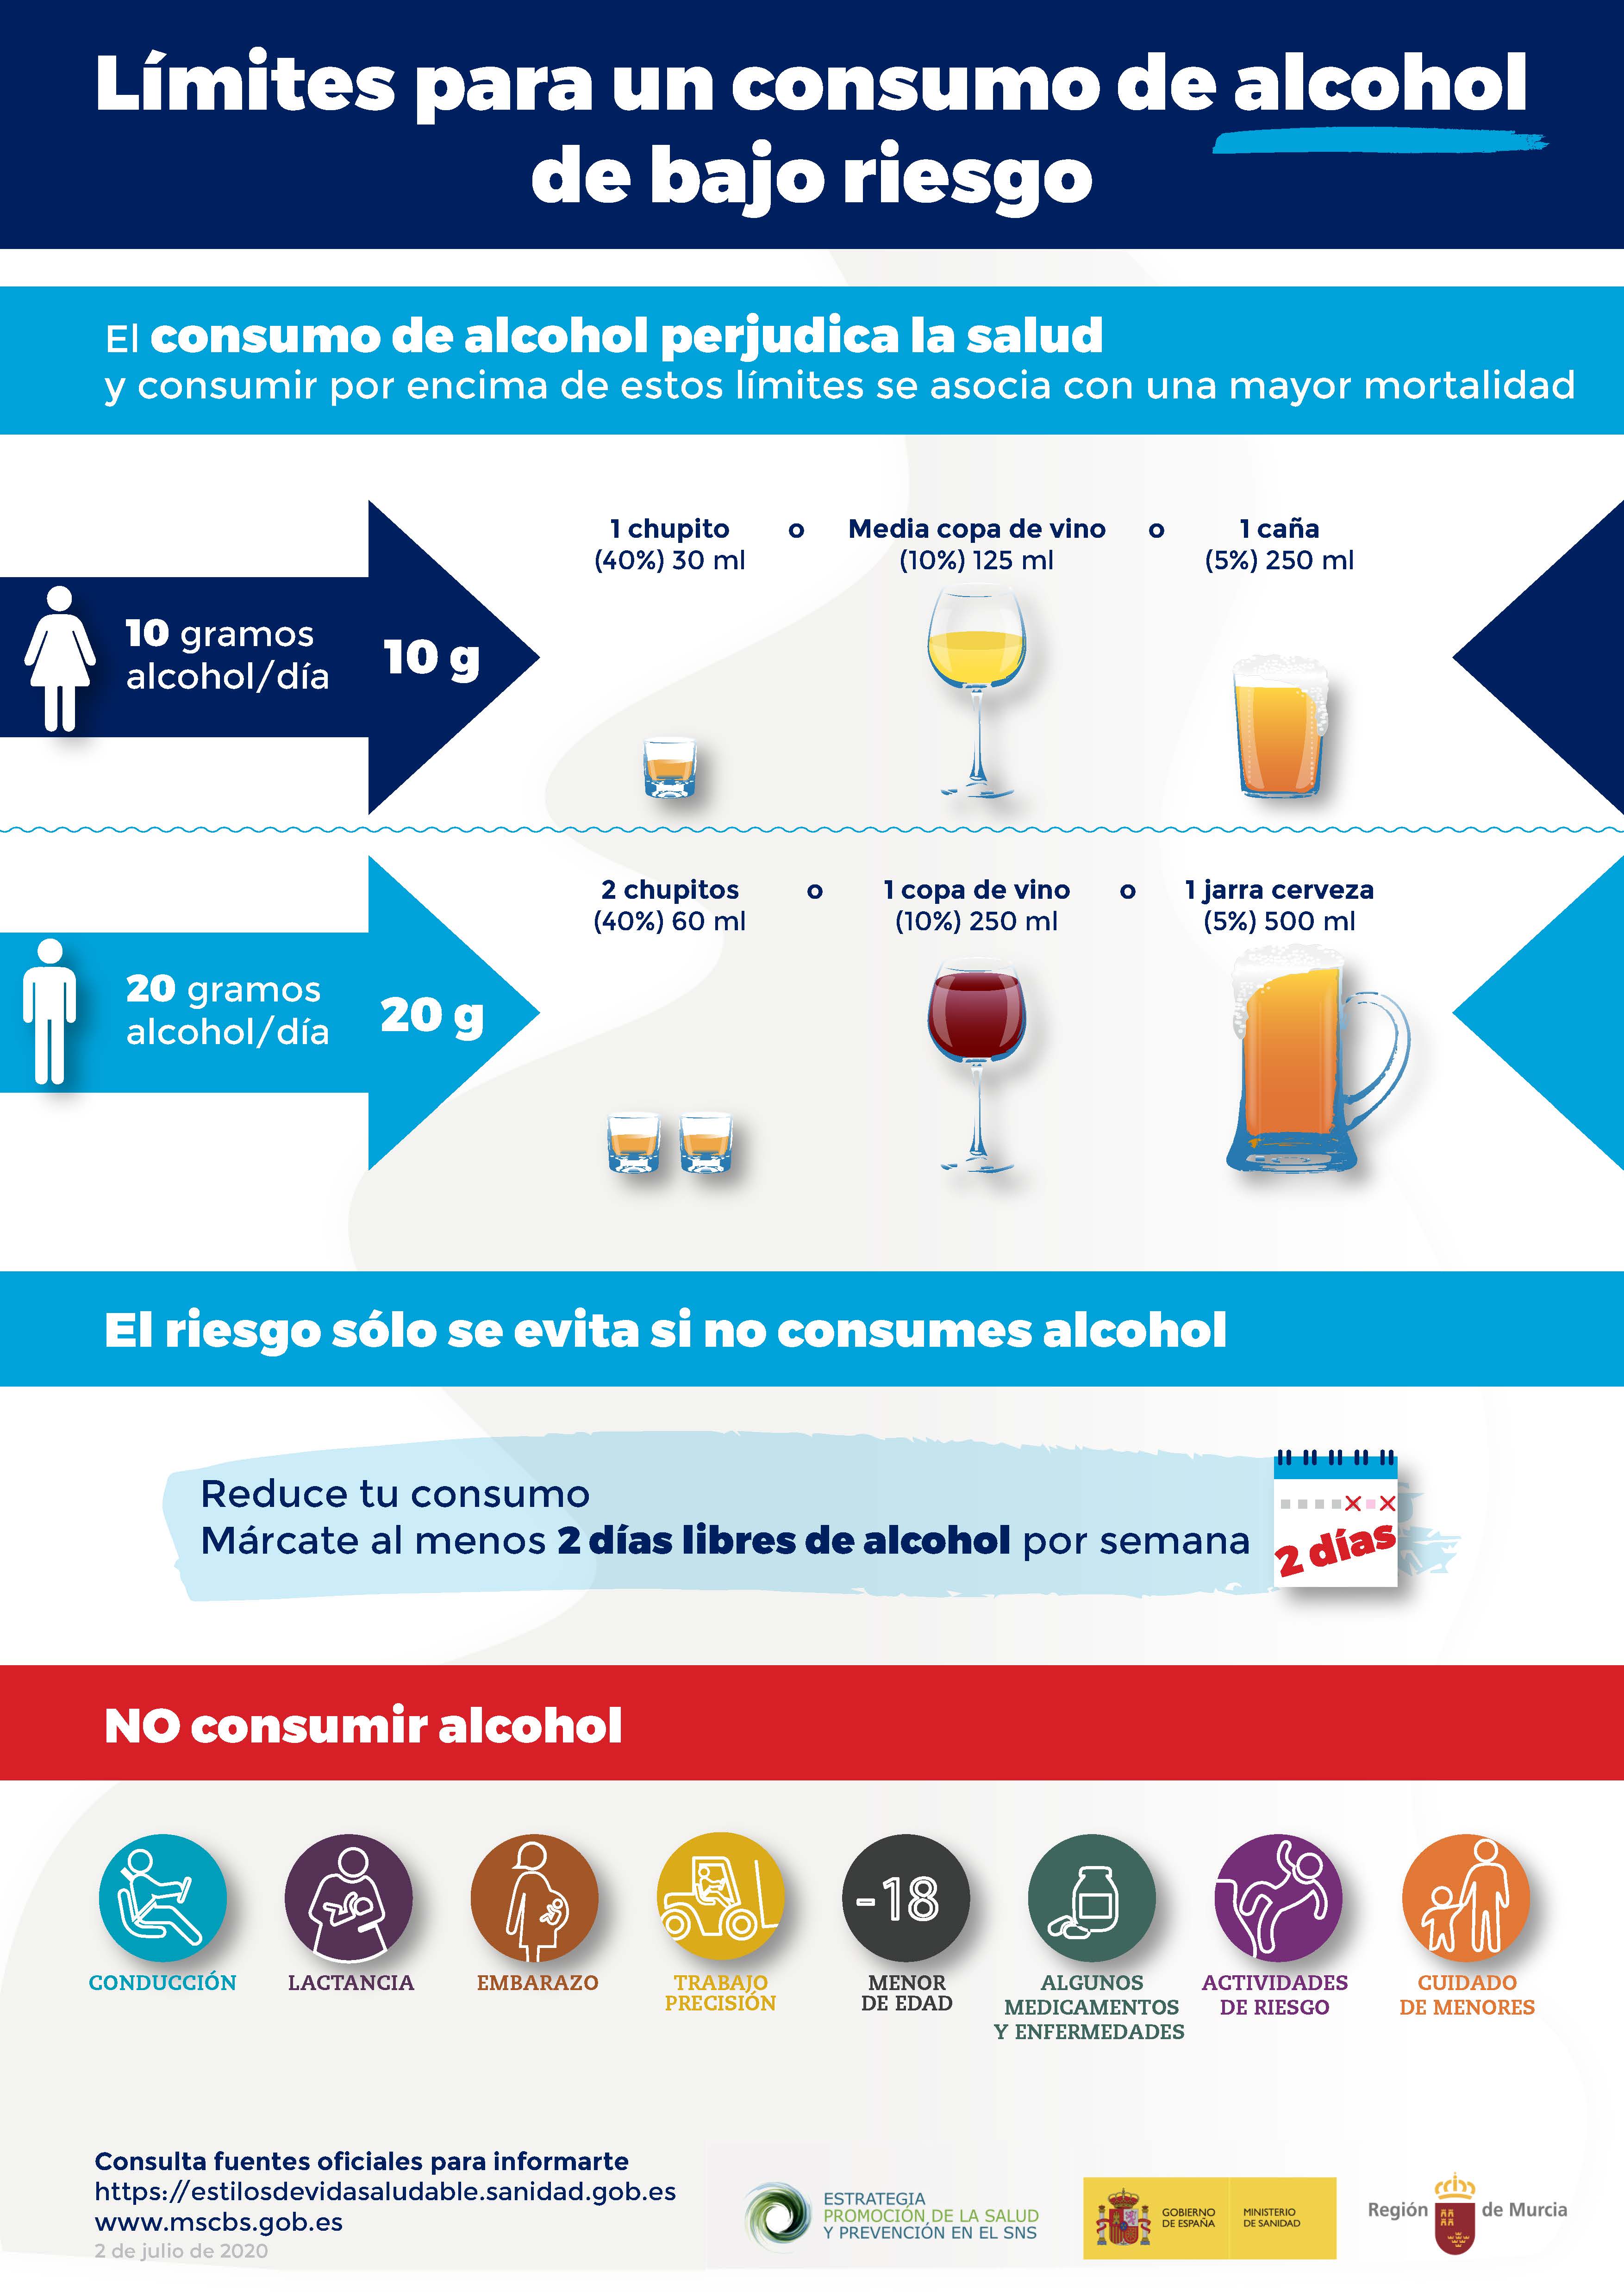 LÍMITES DE CONSUMO DE BAJO RIESGO DE ALCOHOL. Manual del Ministerio de Sanidad, 2020.